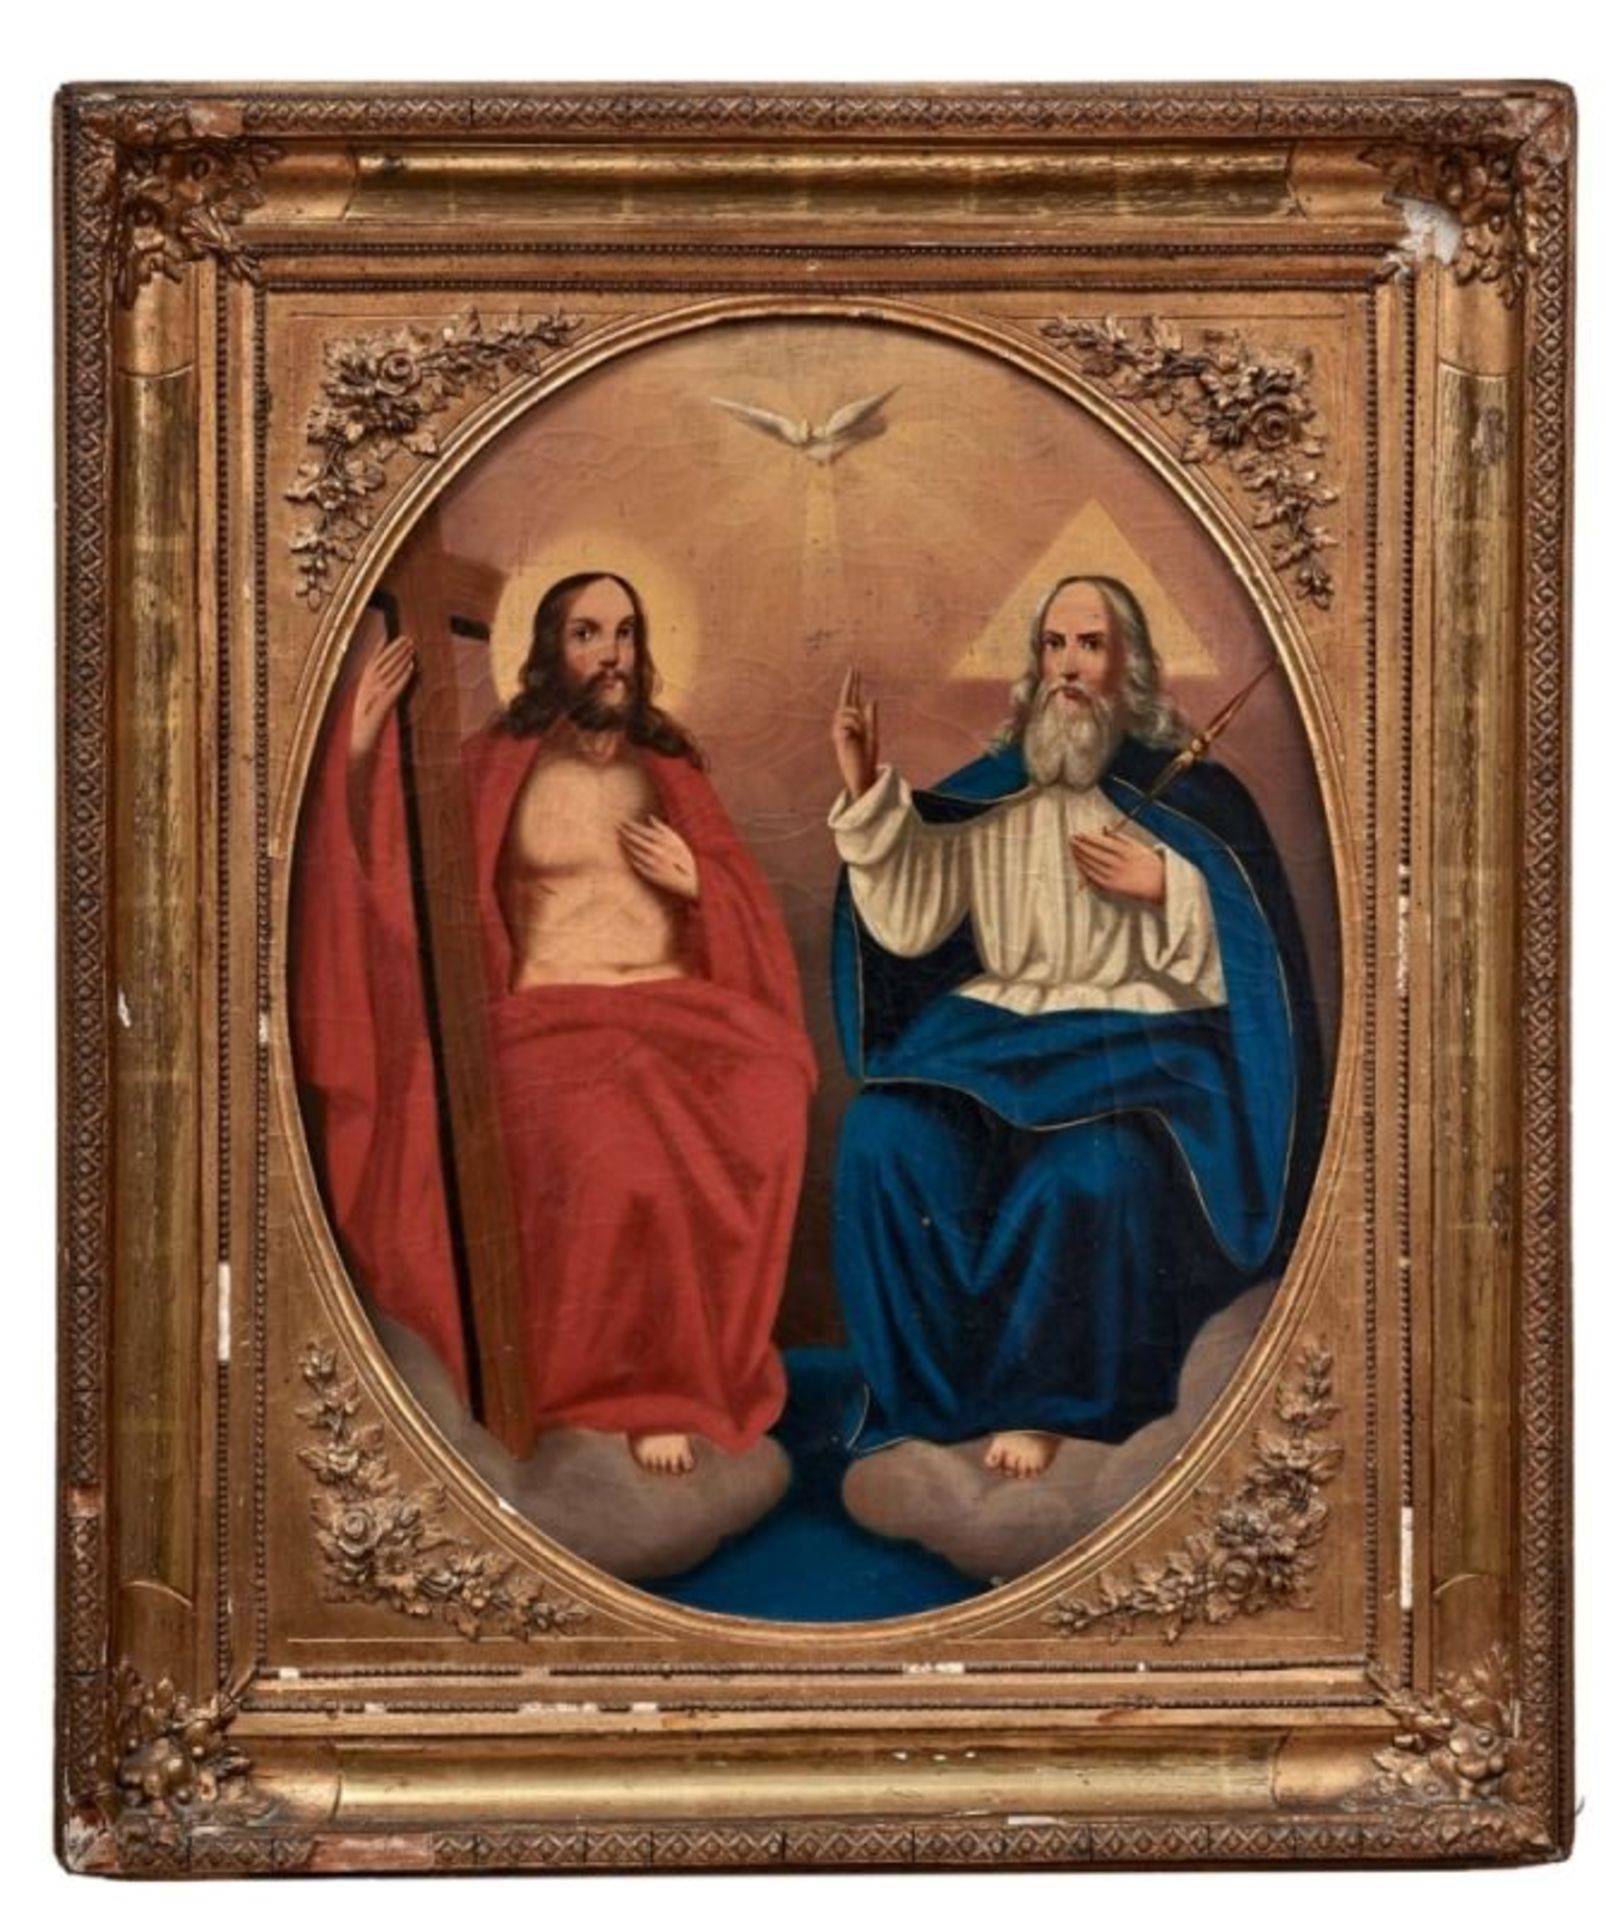 Heilige Dreifaltigkeit19. Jh.Gottvater und Christus auf Wolkensockel thronend, über ihnen der